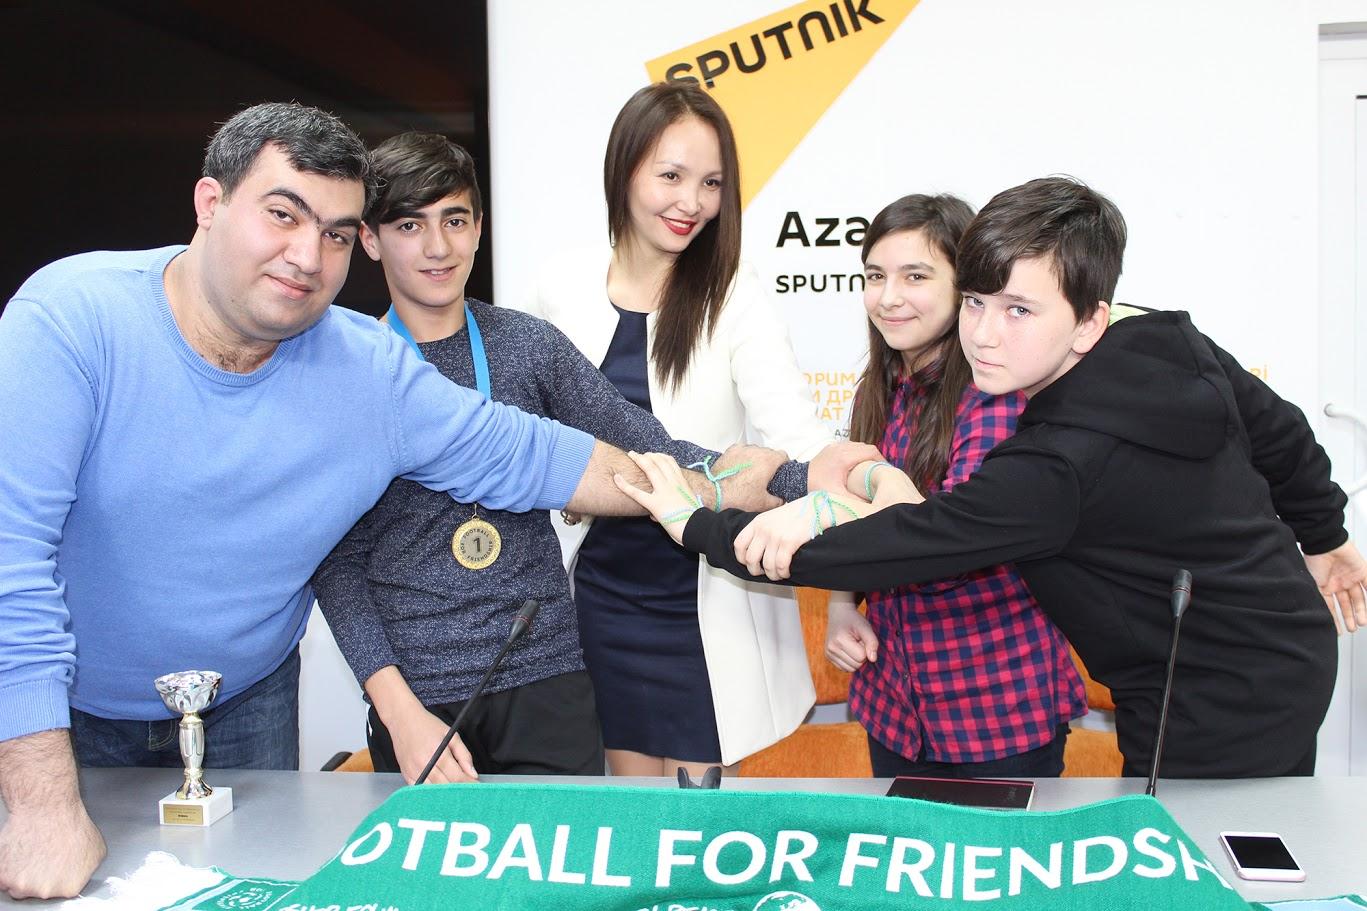 Представители Азербайджана рассказали об участии в турнире "Футбол для дружбы" (ФОТО)